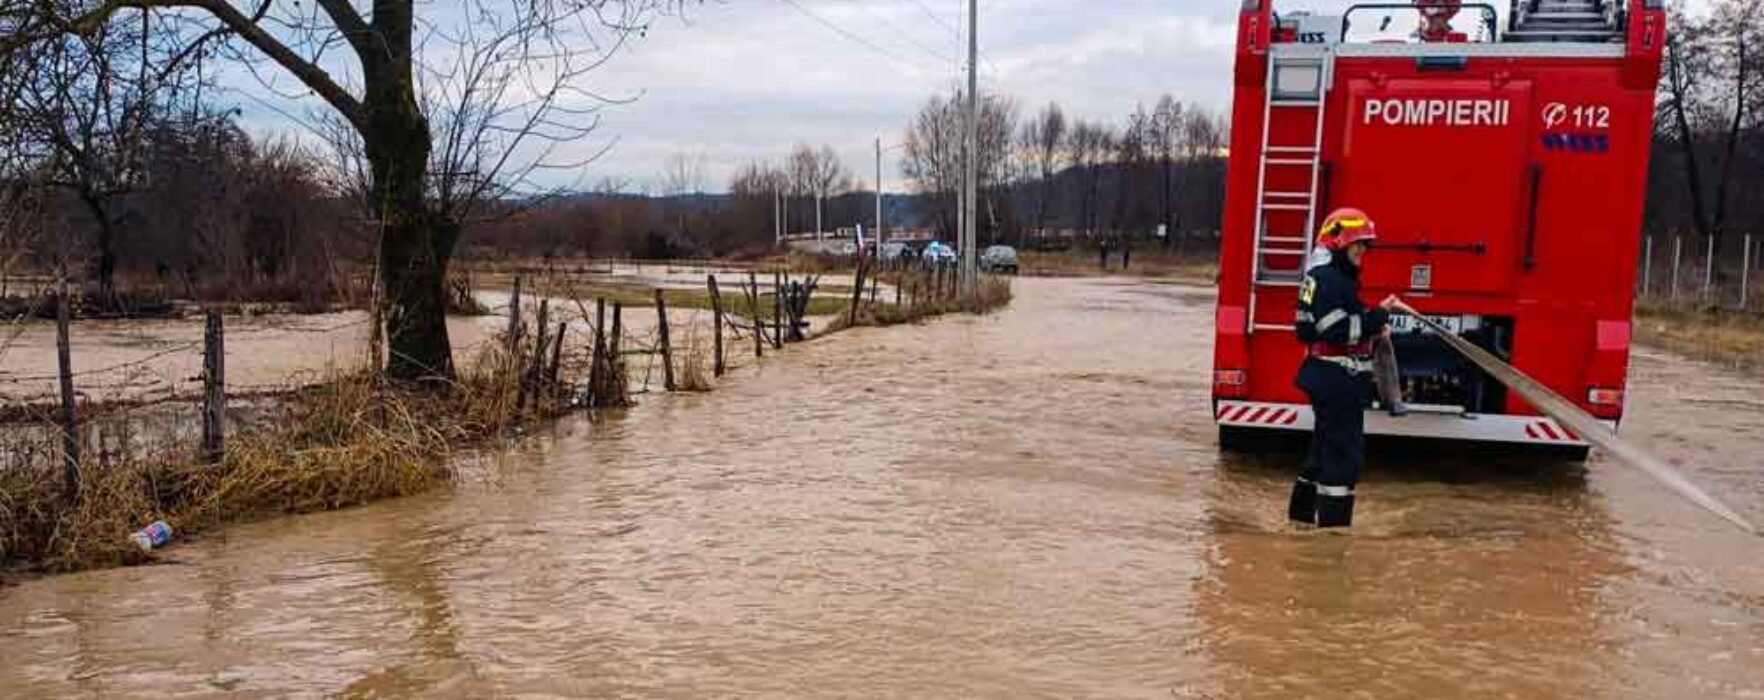 Dâmboviţa: Râul Dâmboviţa a ieşit din matcă şi a inundat un teren de sport, grădini şi un drum judeţean